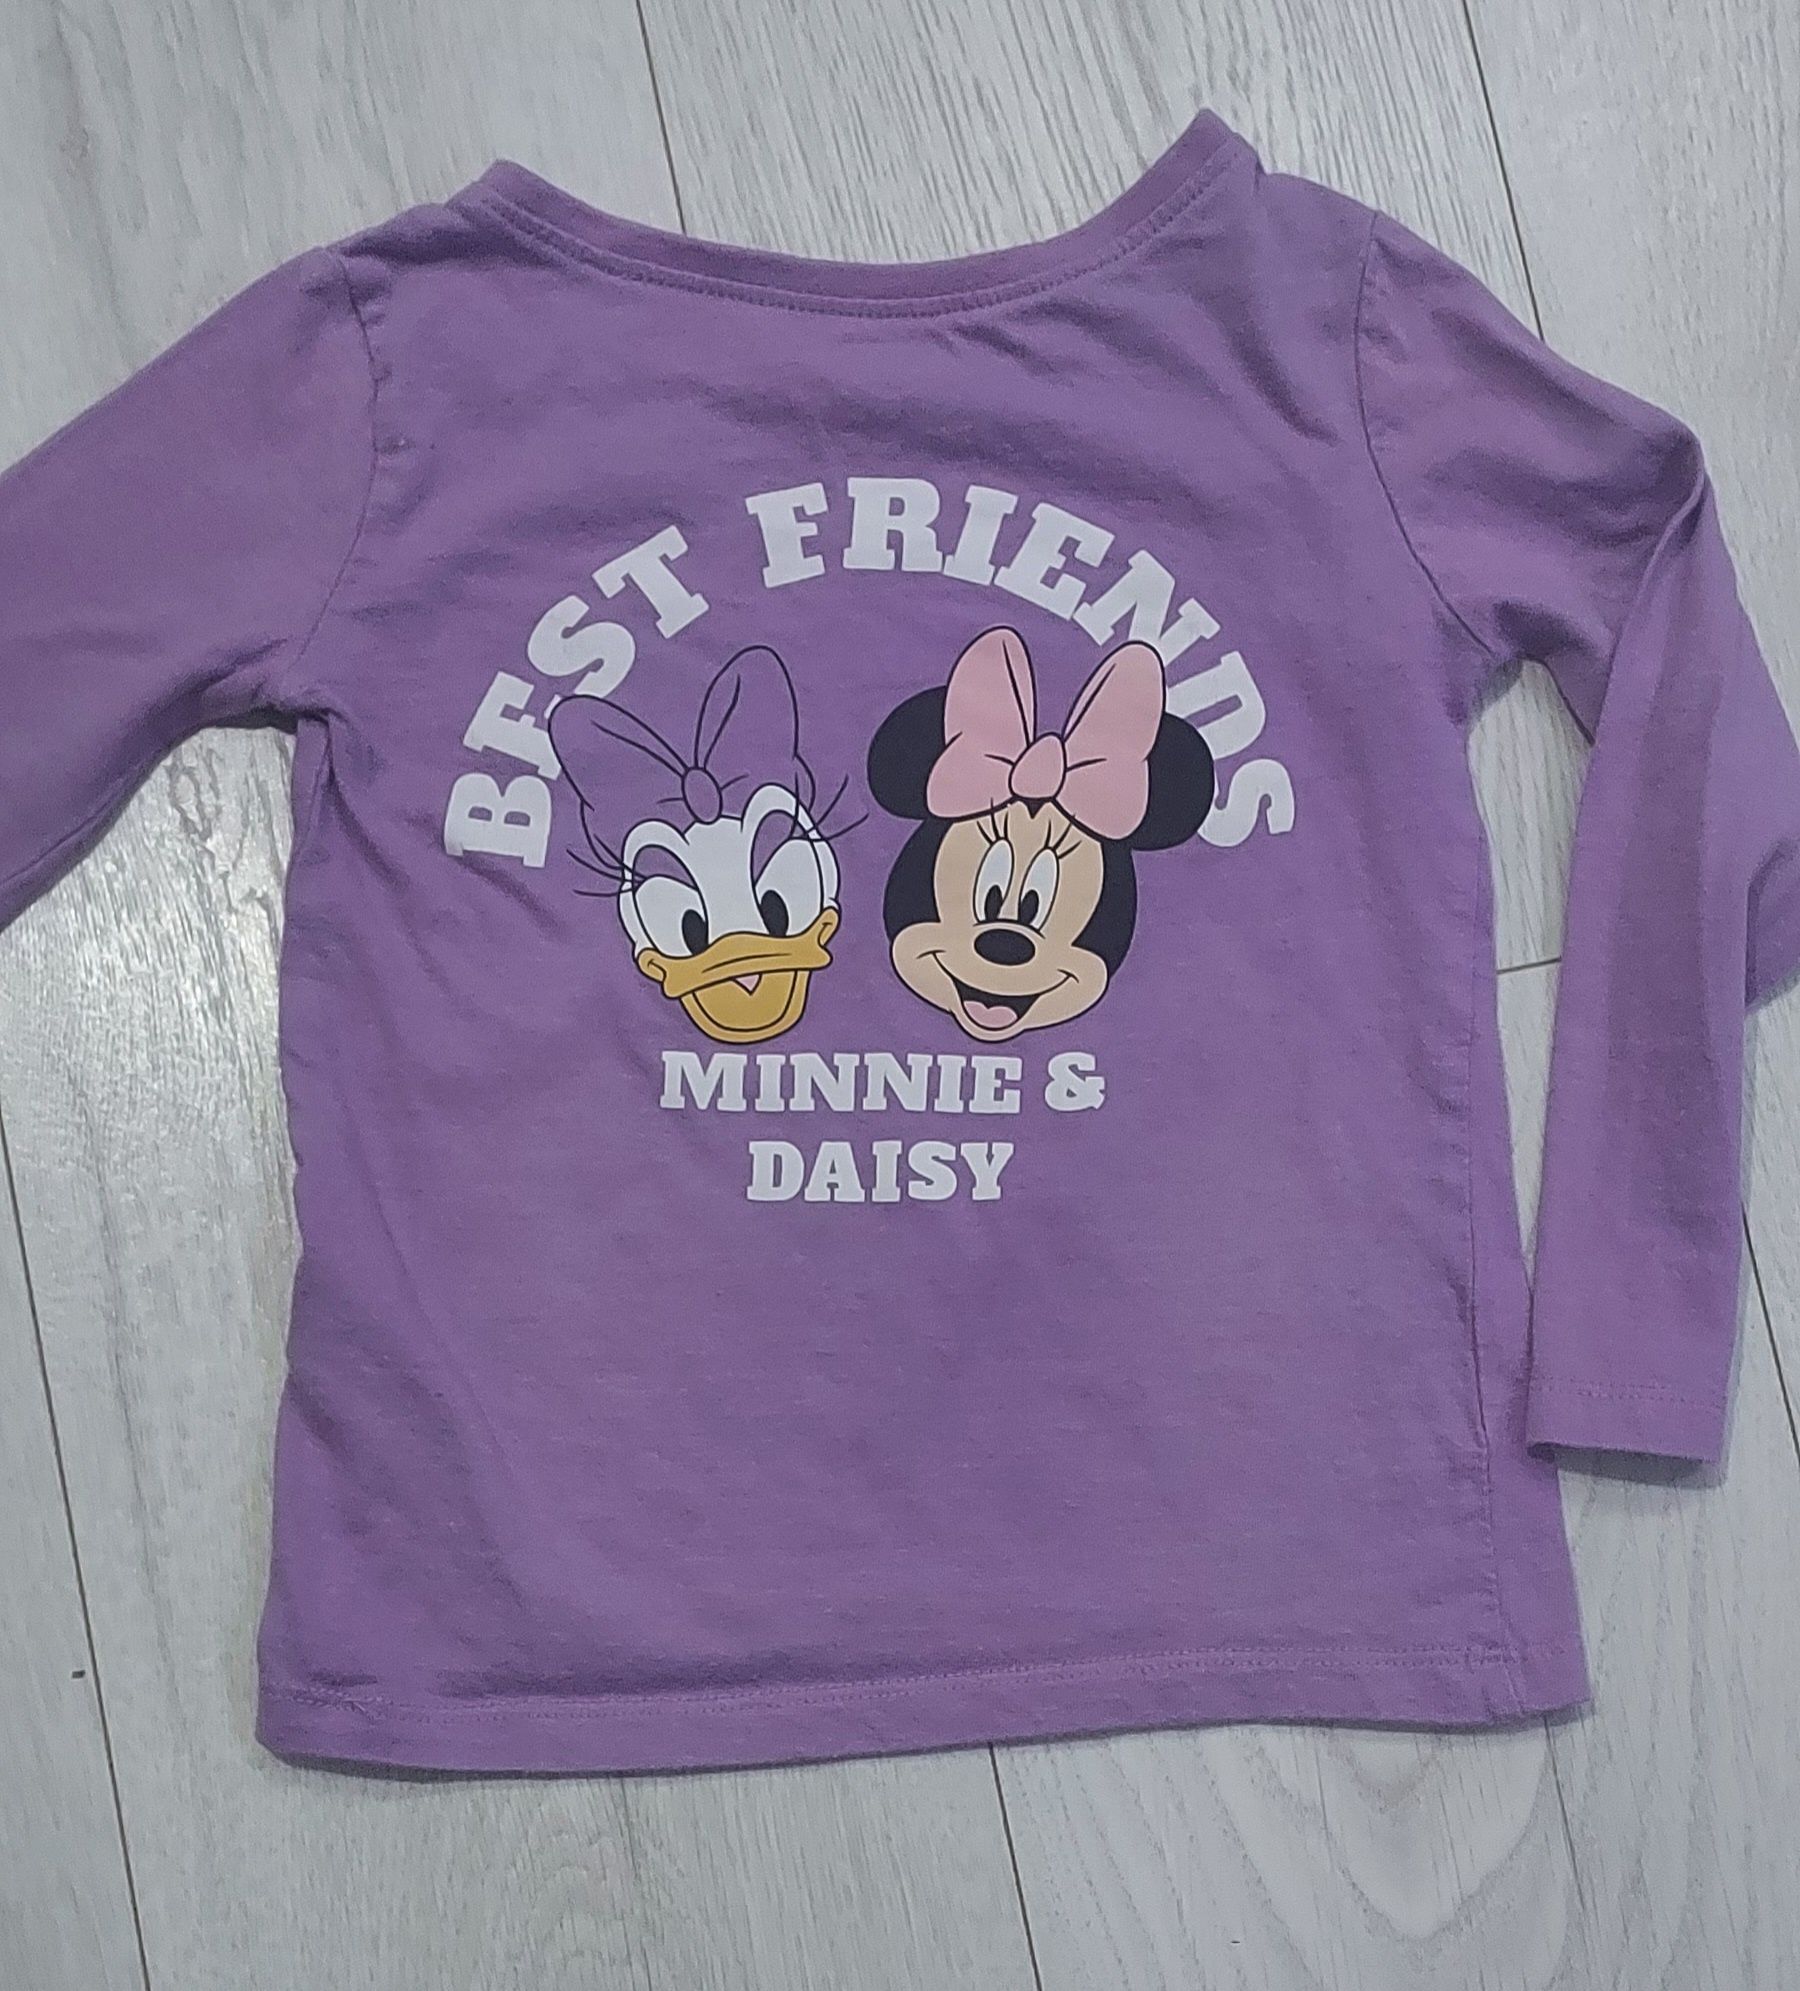 Bluzka Mini i Daisy, rozmiar 98